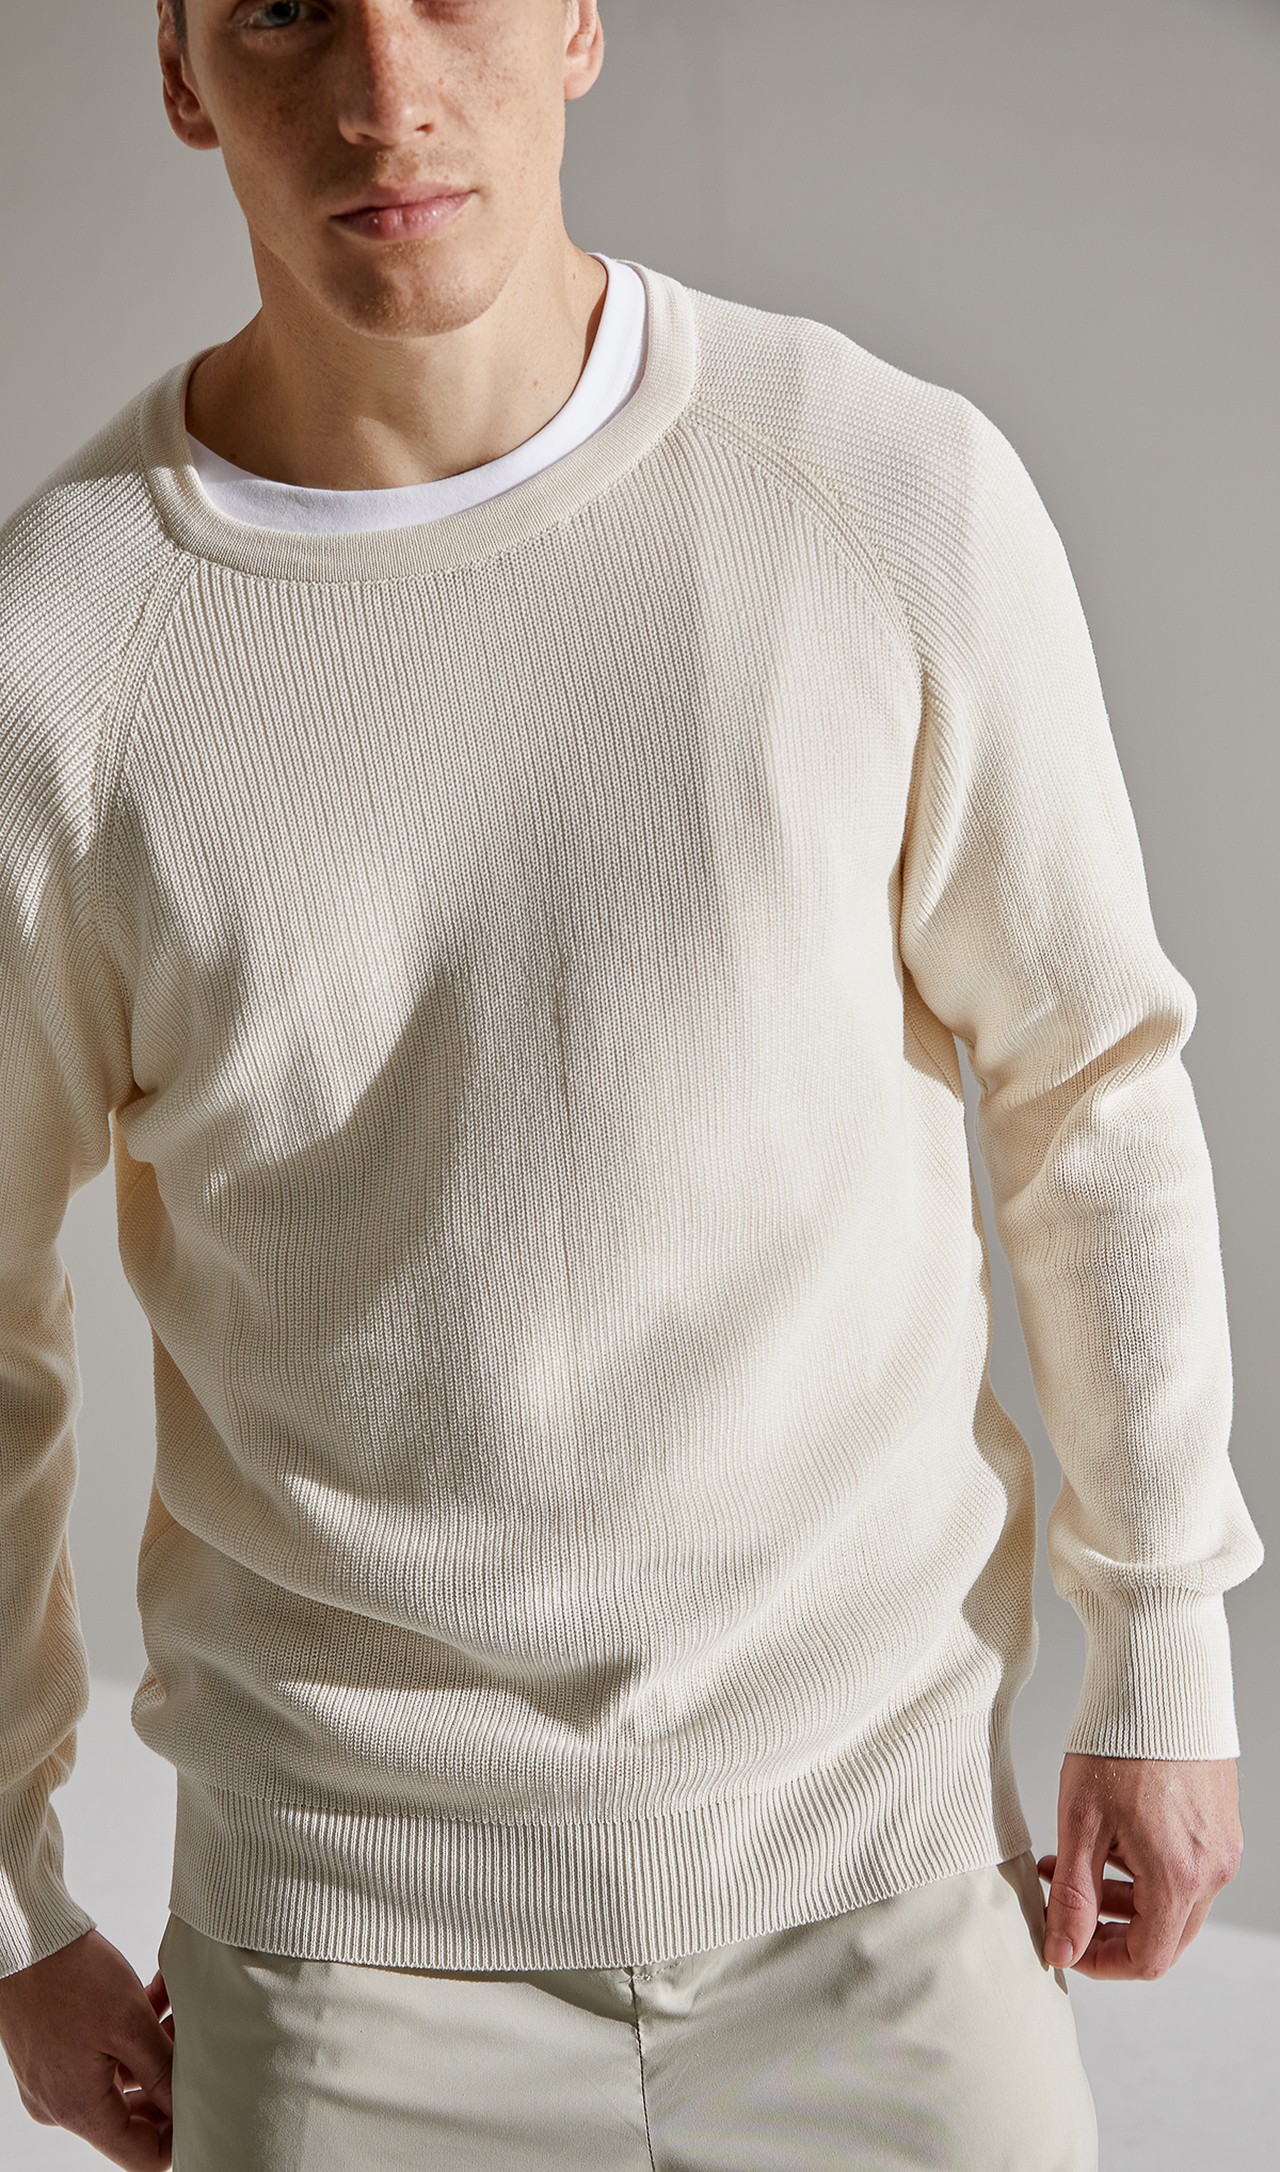 Sweater Tricot Perola Algodão